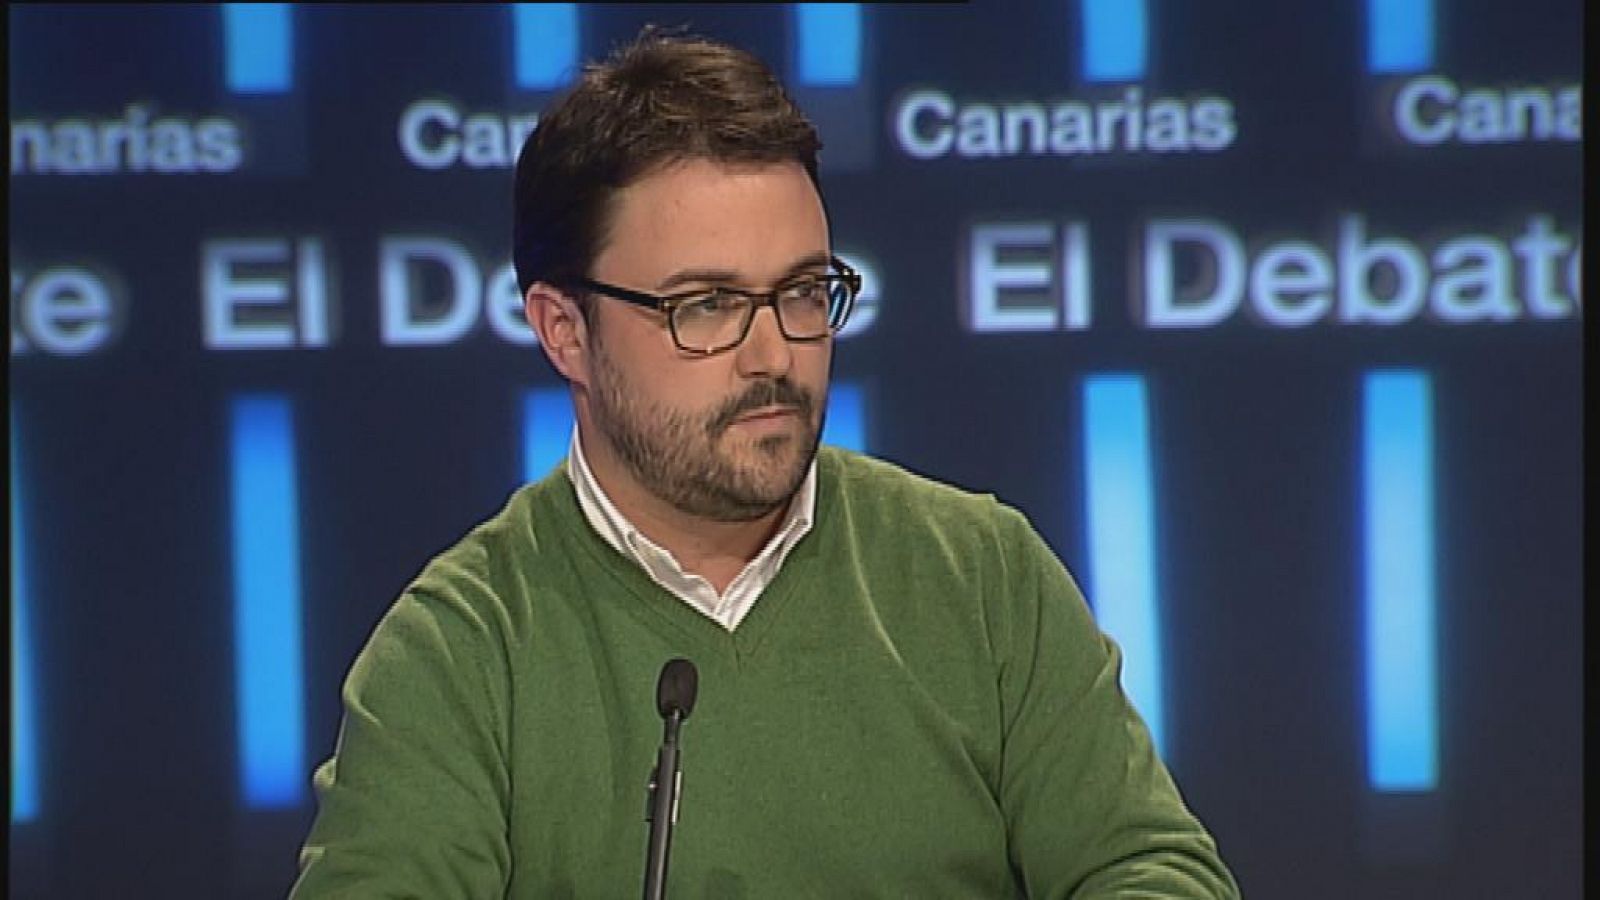 El Debate de La 1 Canarias - 05/02/14